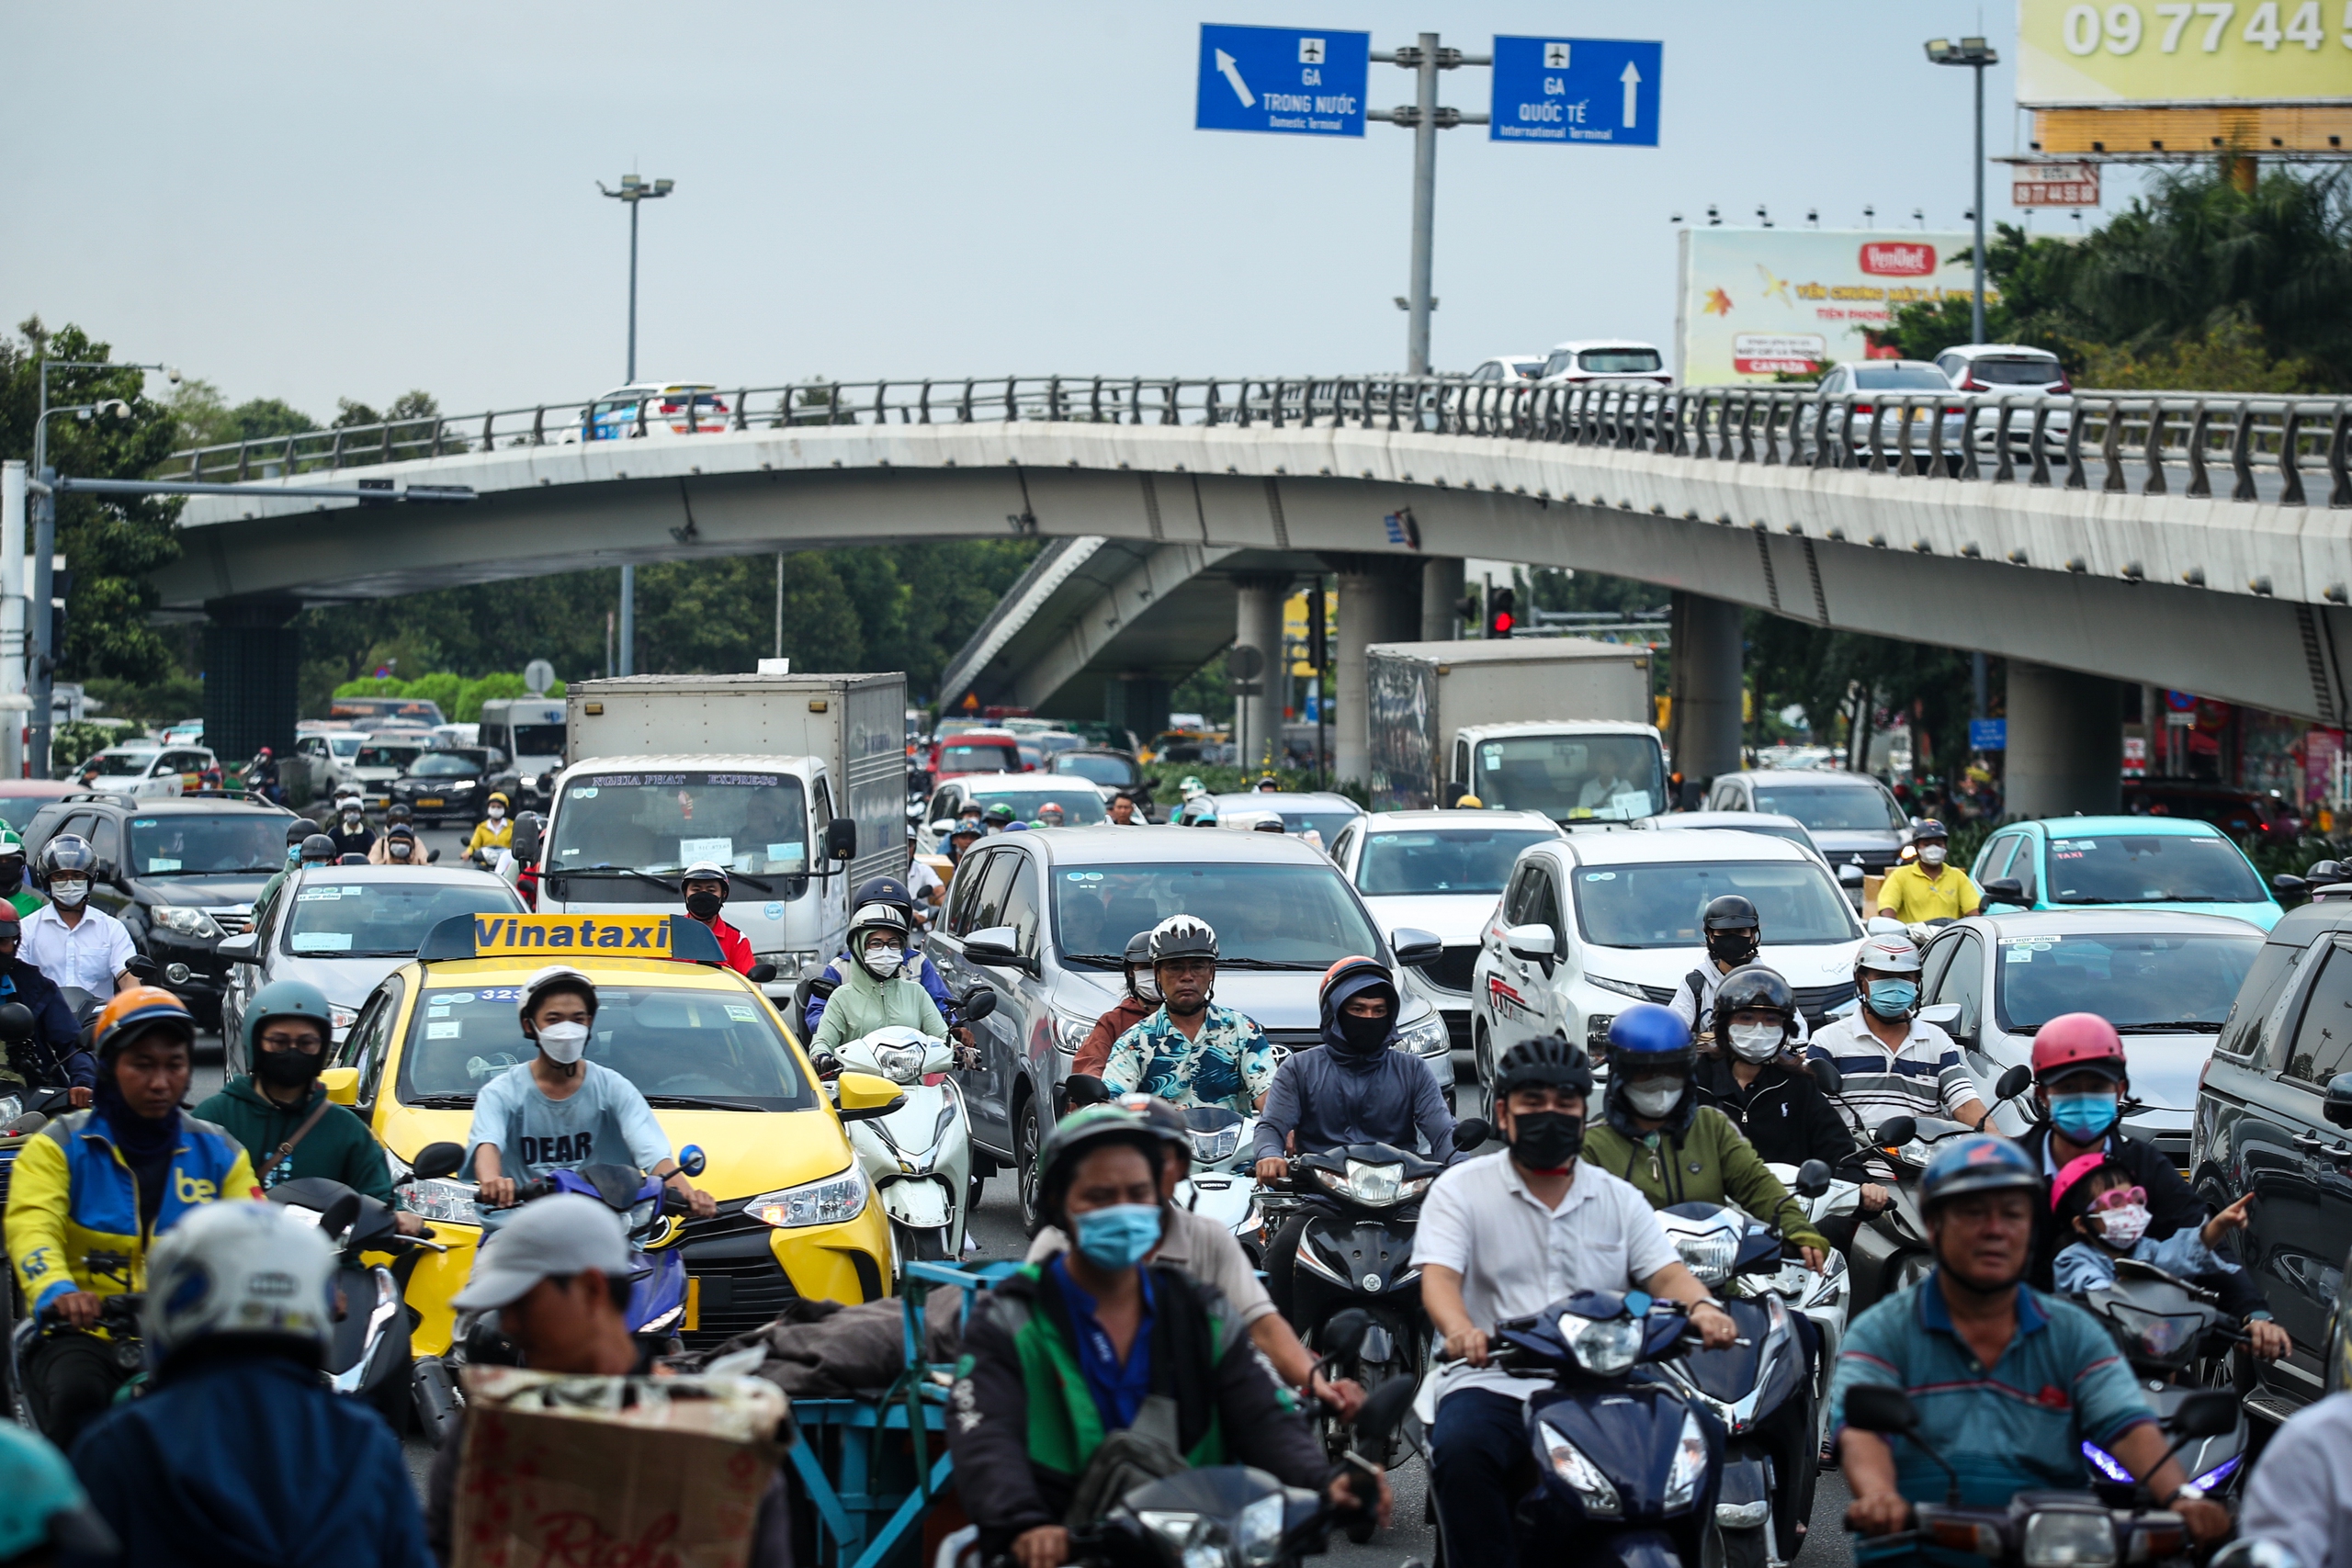 26 tháng chạp: Cửa ngõ sân bay Tân Sơn Nhất đông nghẹt xe cộ, có lúc kẹt cứng- Ảnh 1.